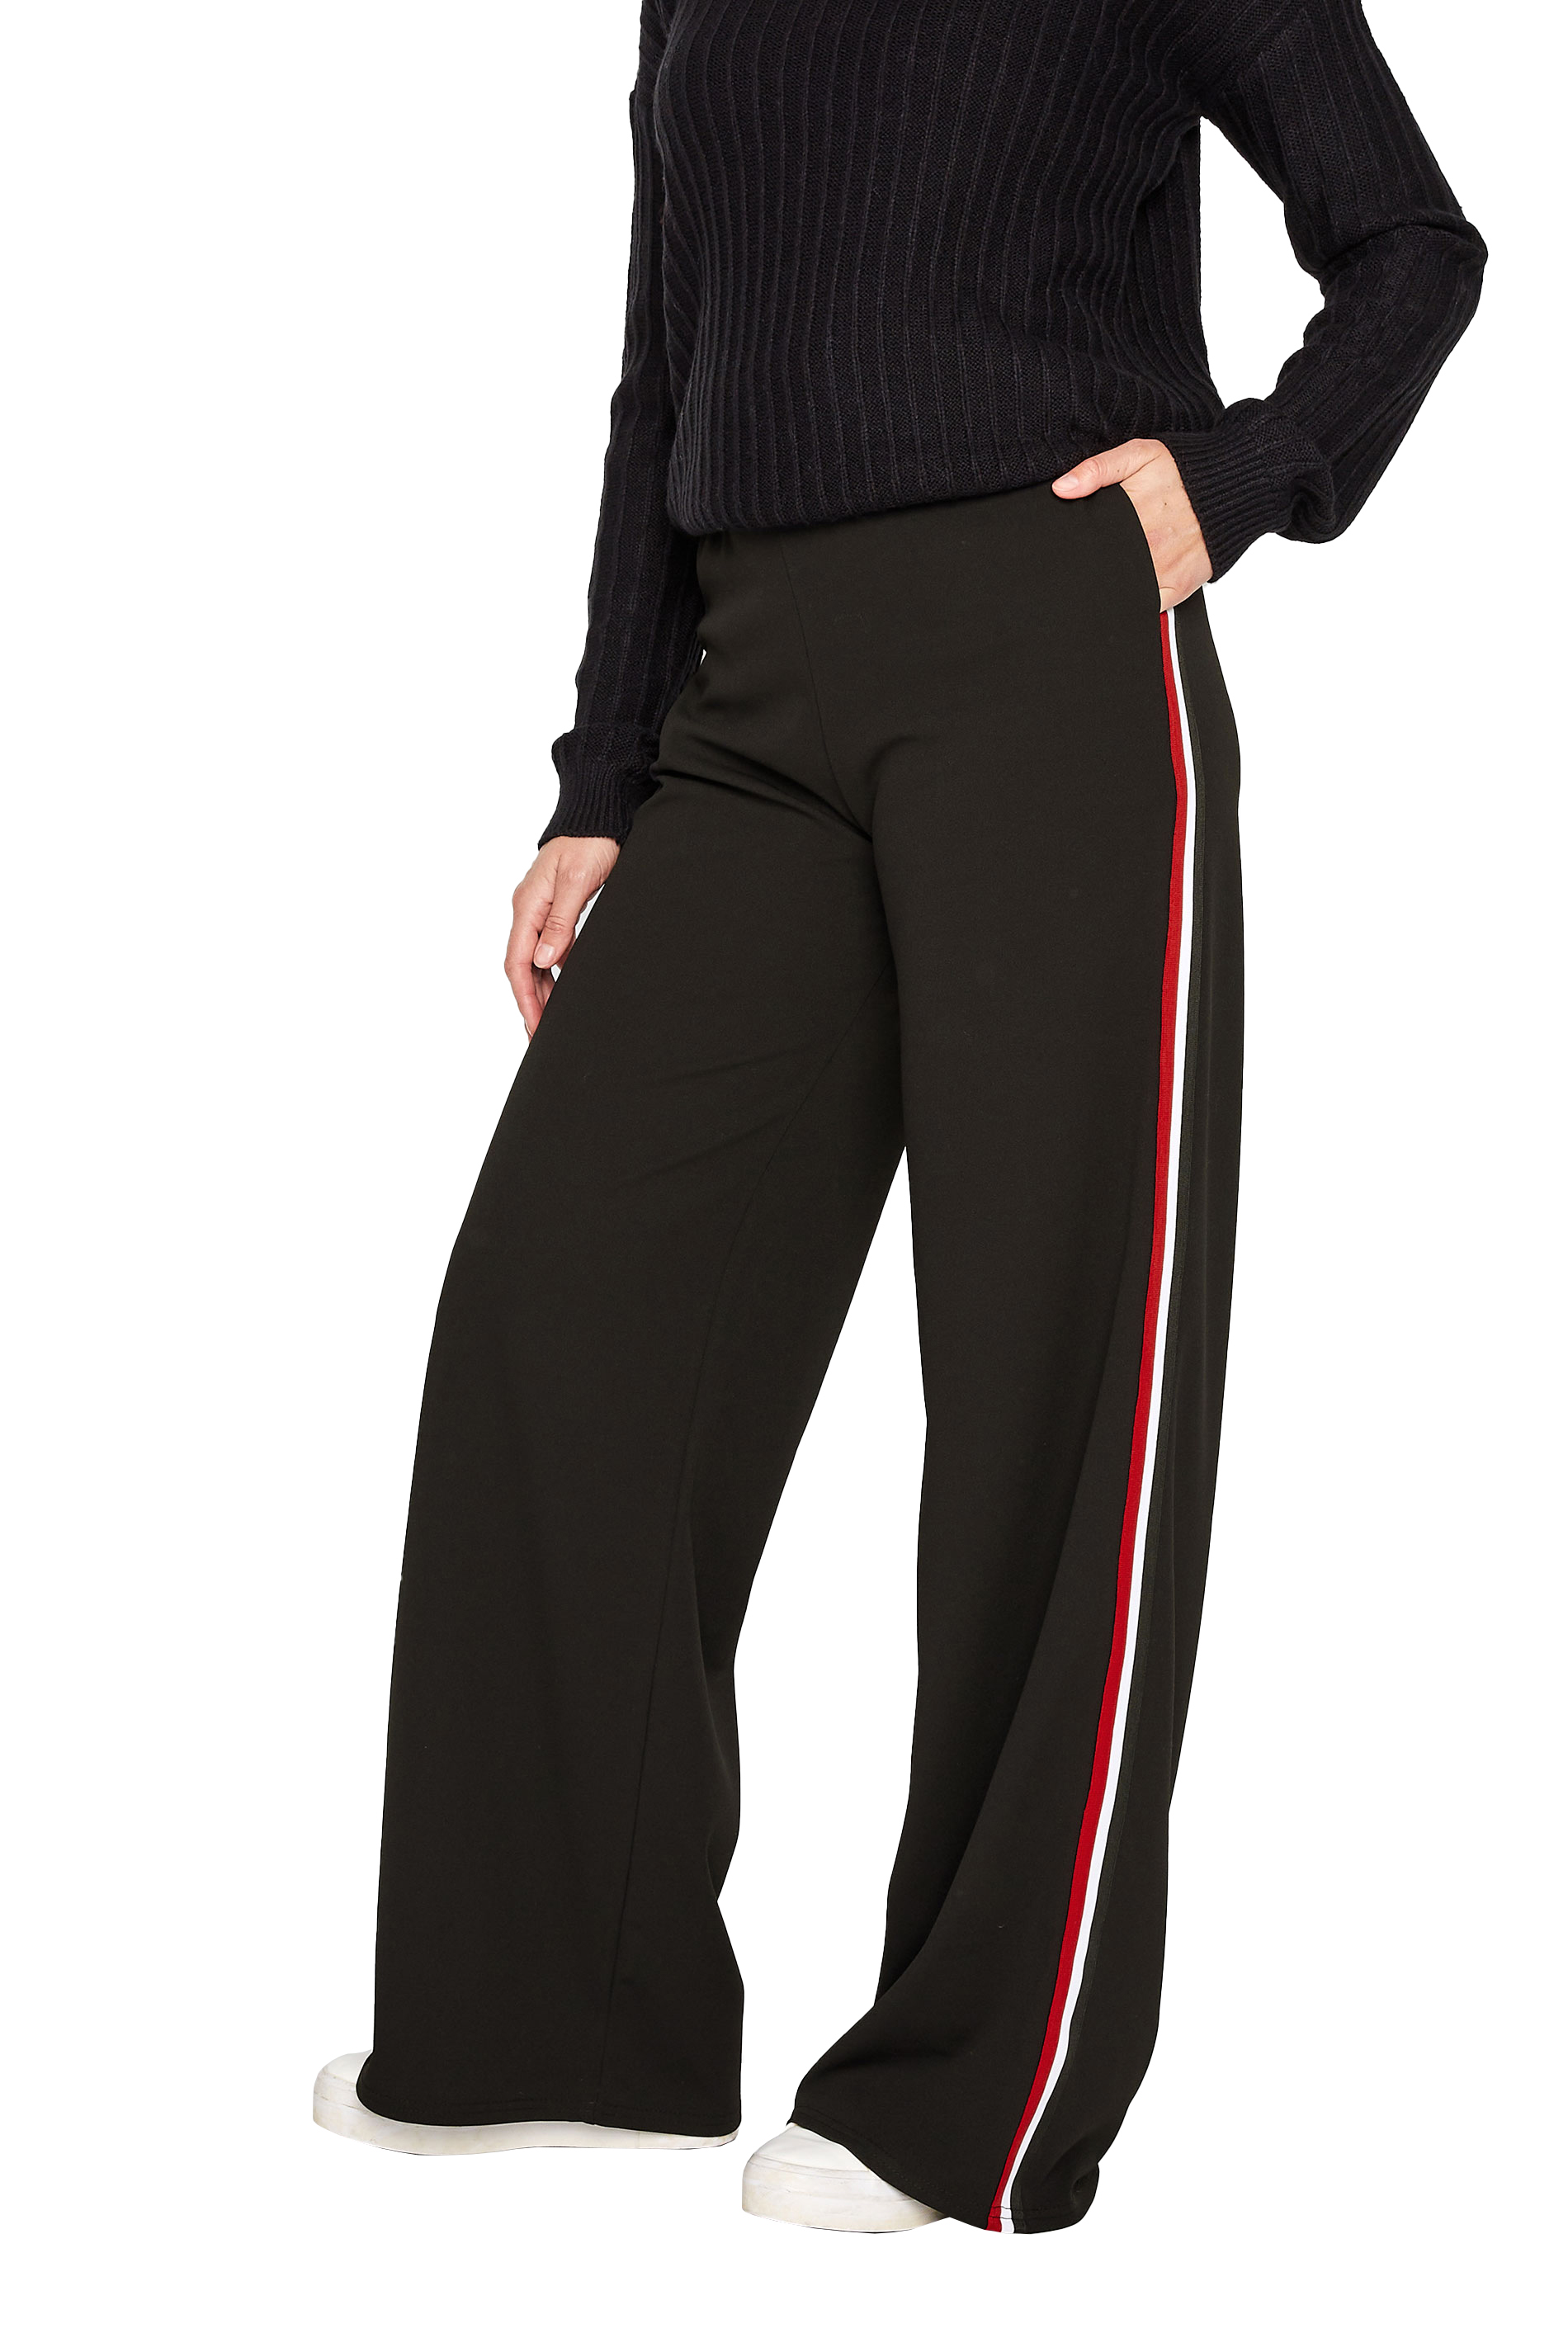 LTS Tall Women's Black & Red Side Stripe Wide Leg Trousers | Long 